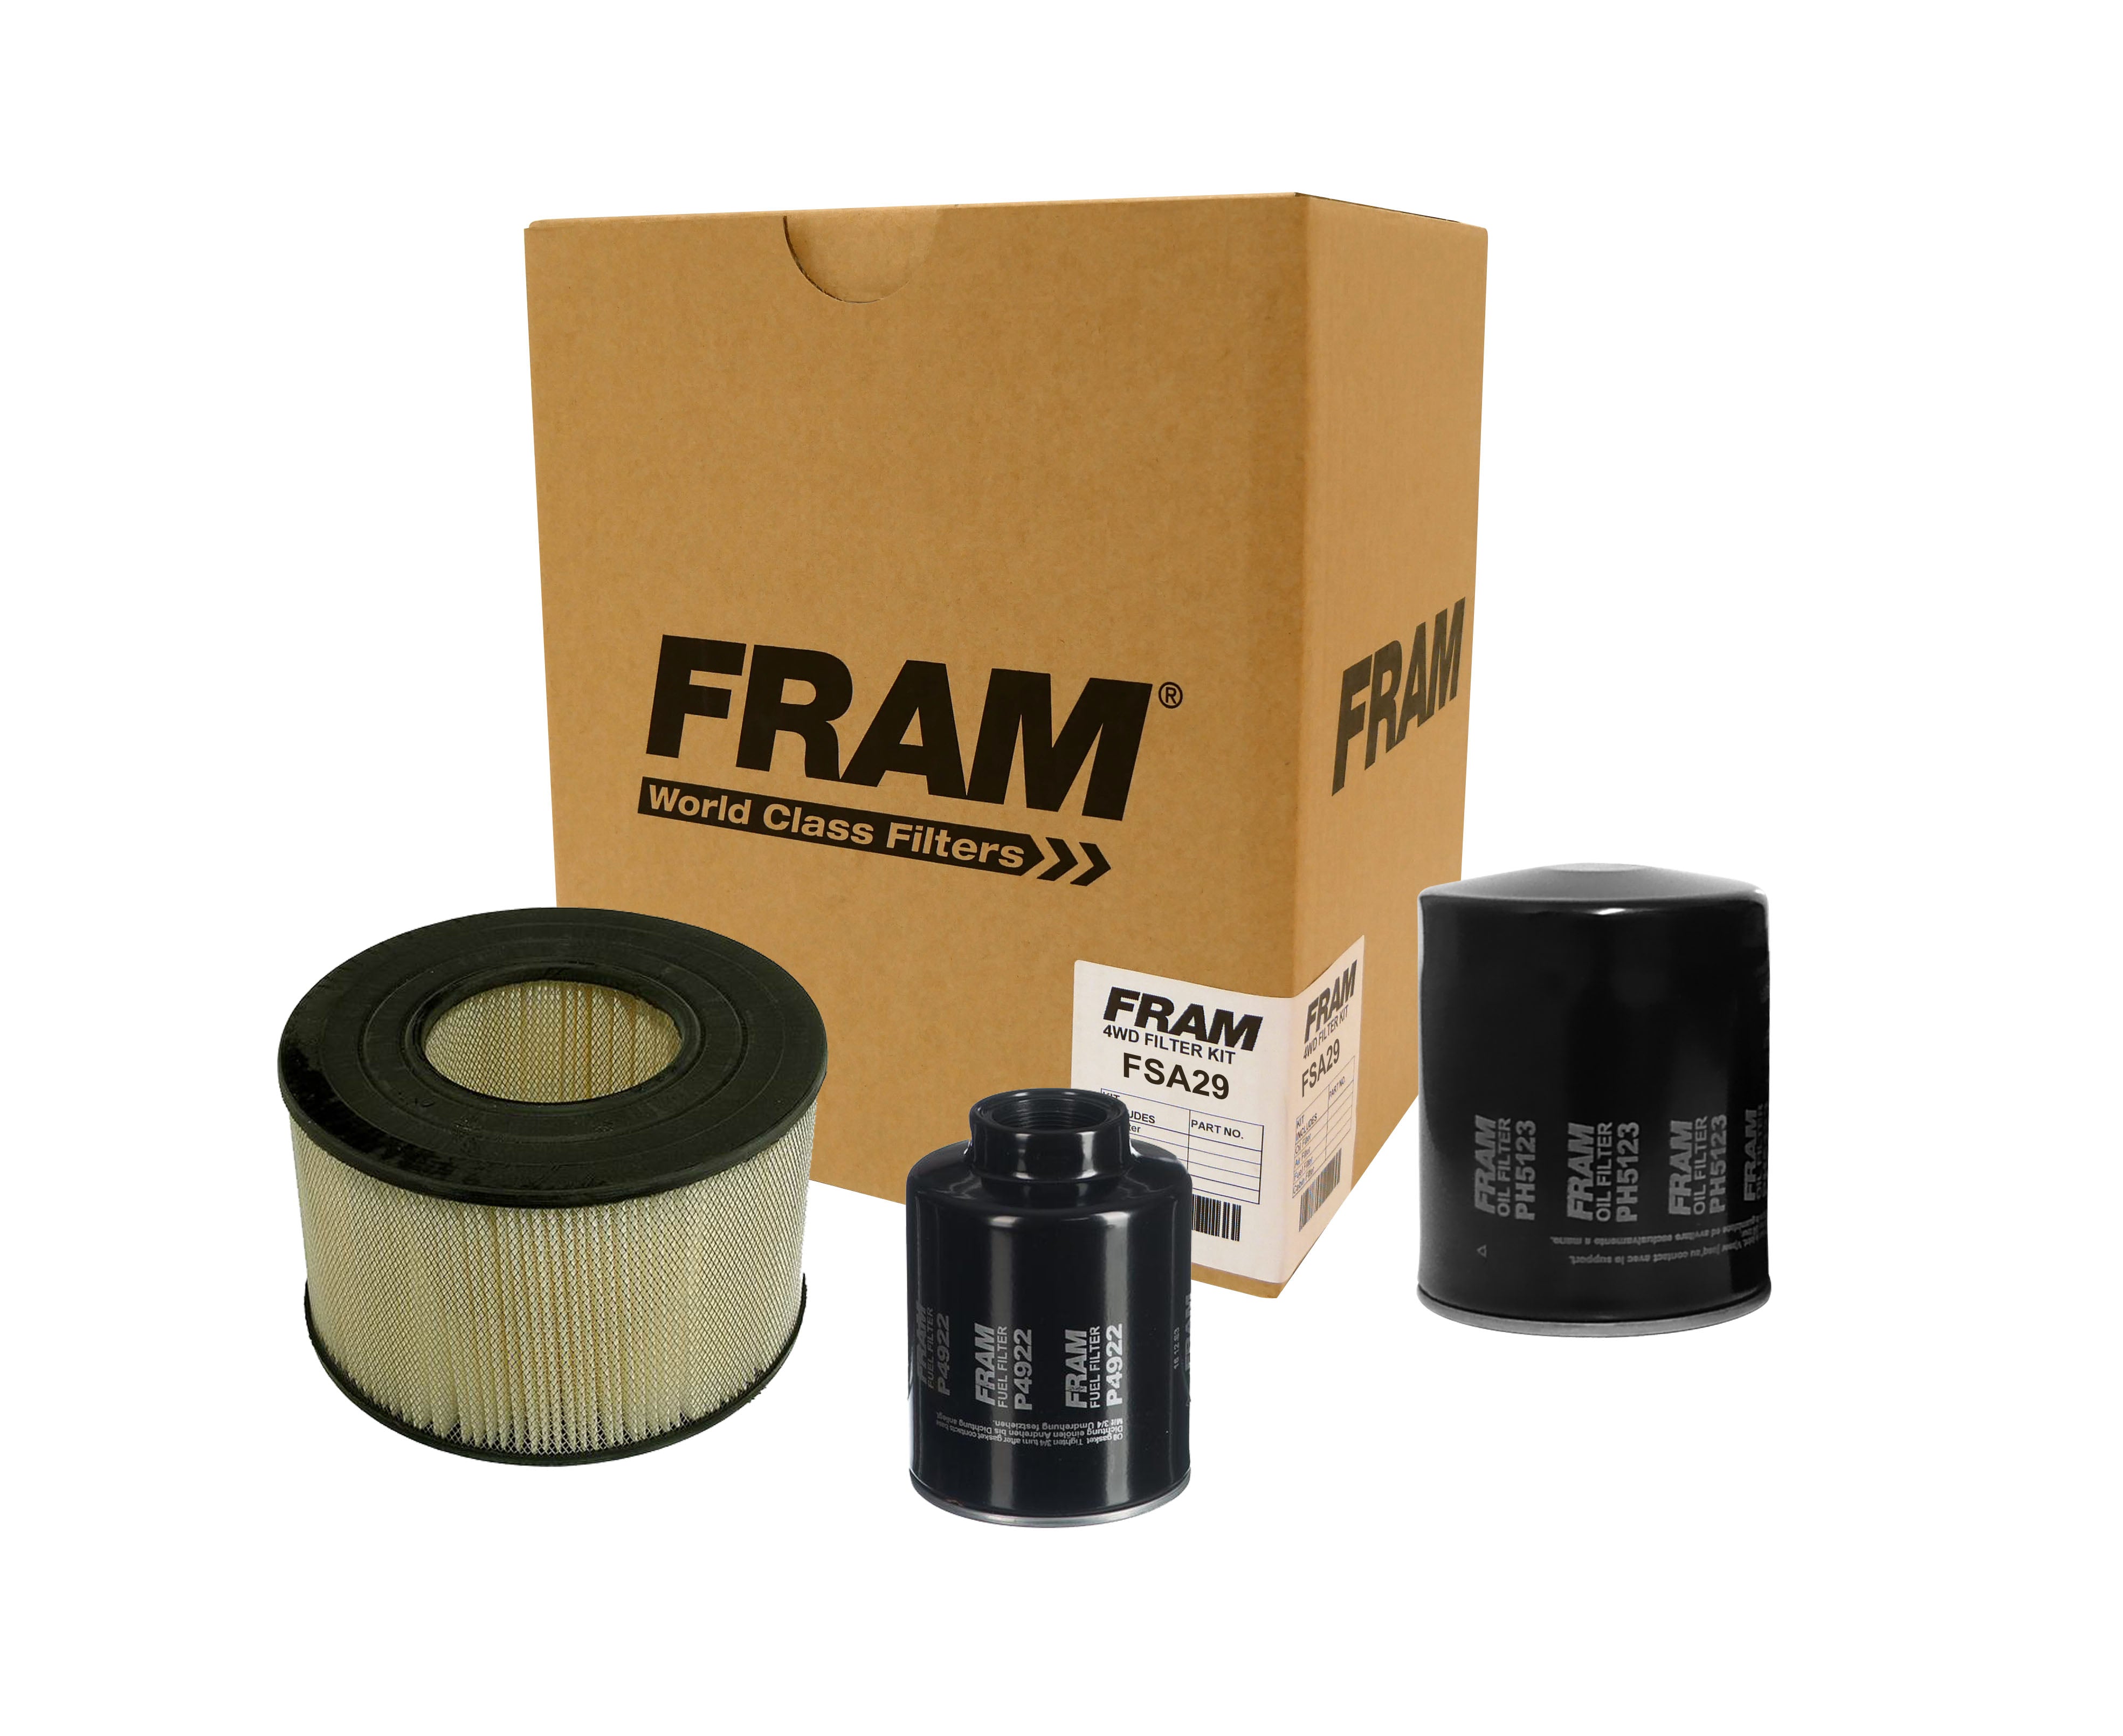 FRAM 4wd Filter Kit for Toyota Landcruiser HDJ78 HDJ79 | FRAM